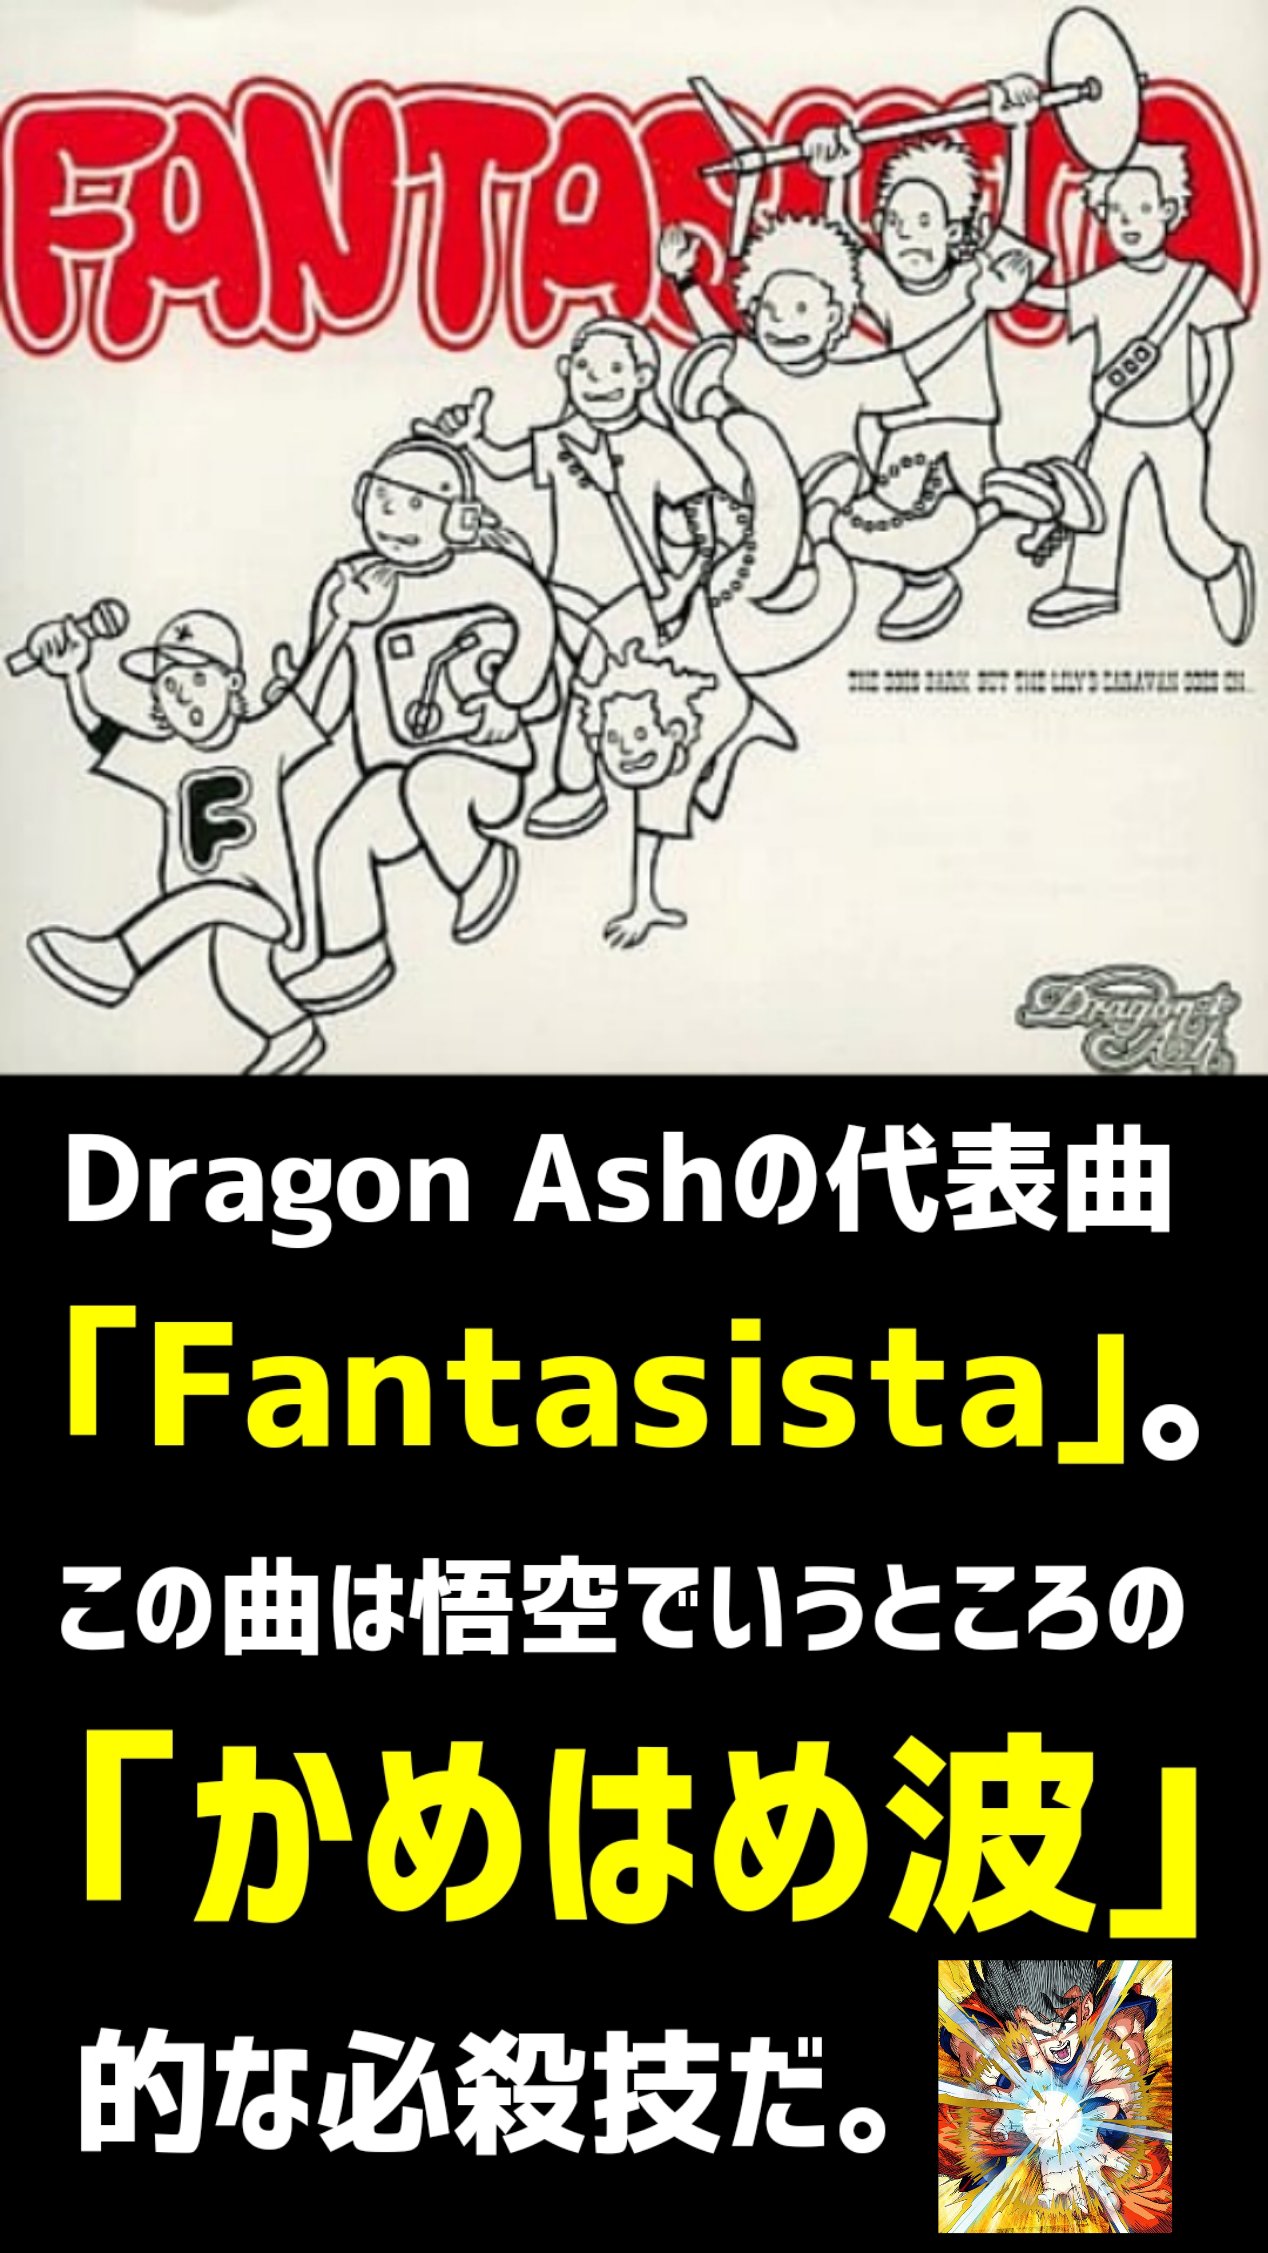 餓鬼iちょ Dragon Ashの Fantasista をliveで聴きたい件 T Co Qrmme1yxln Twitter